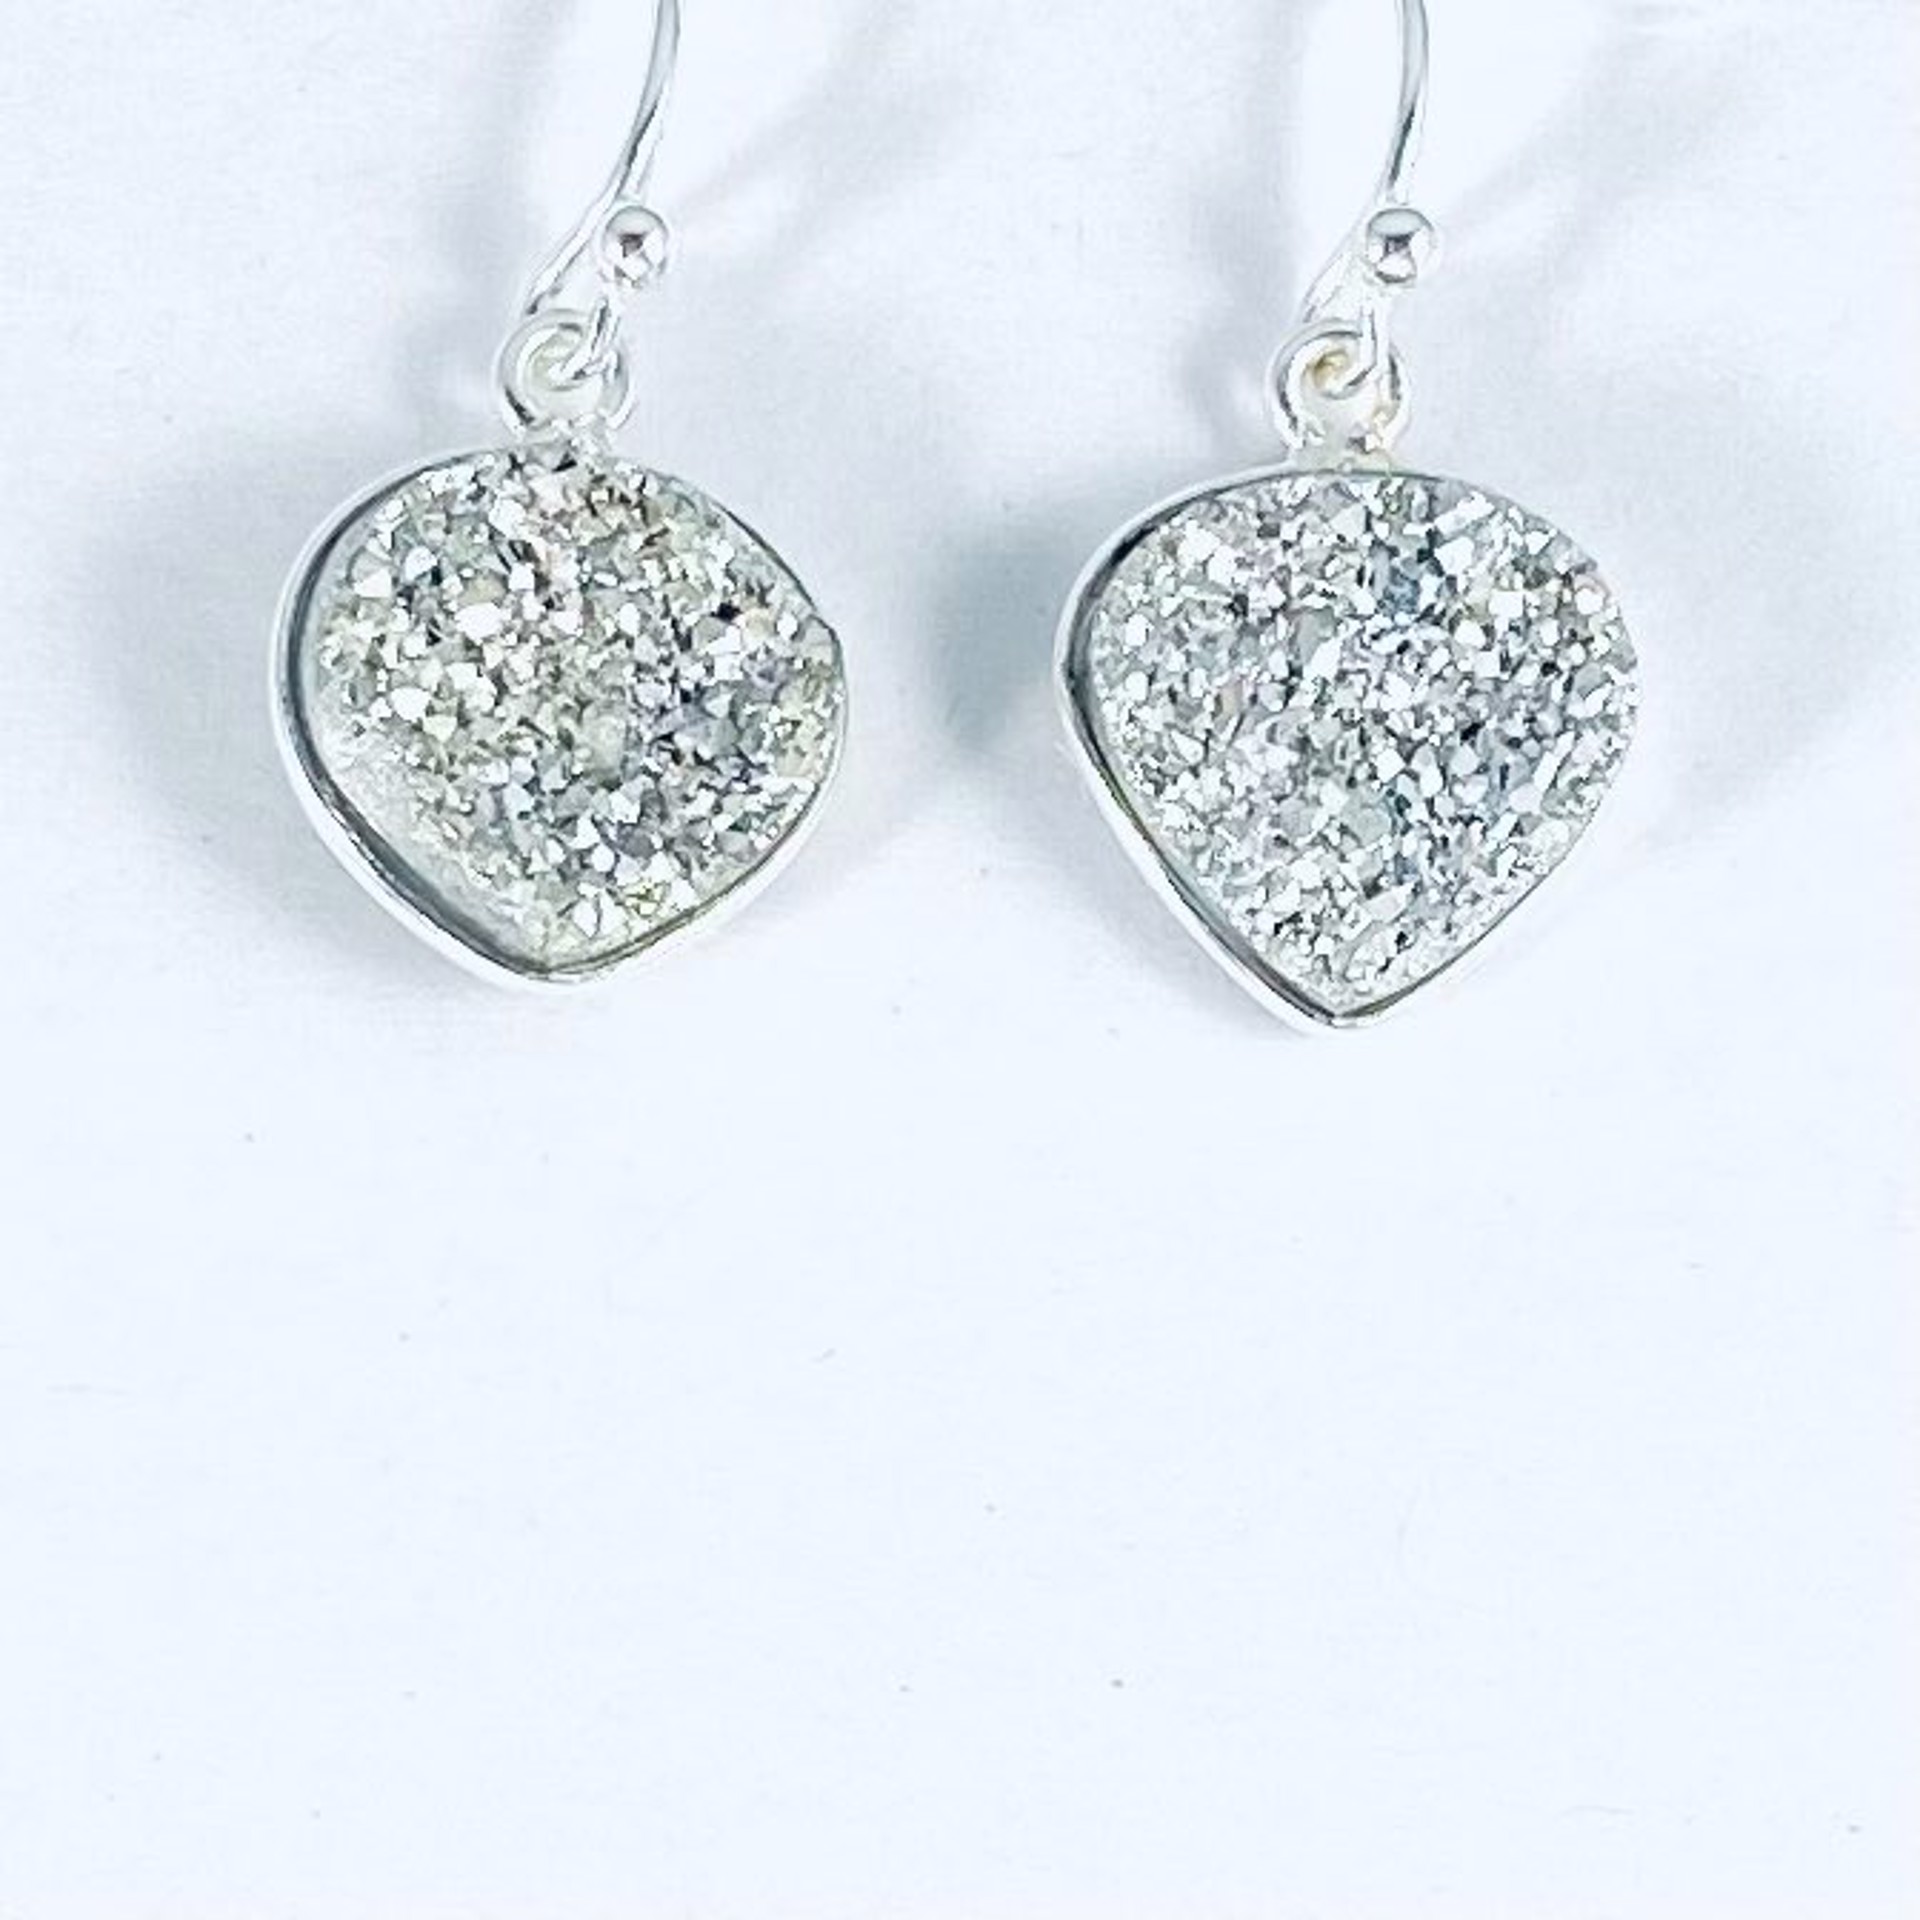 NT22-224 Heart Shaped Silver Druzy Earrings by Nance Trueworthy